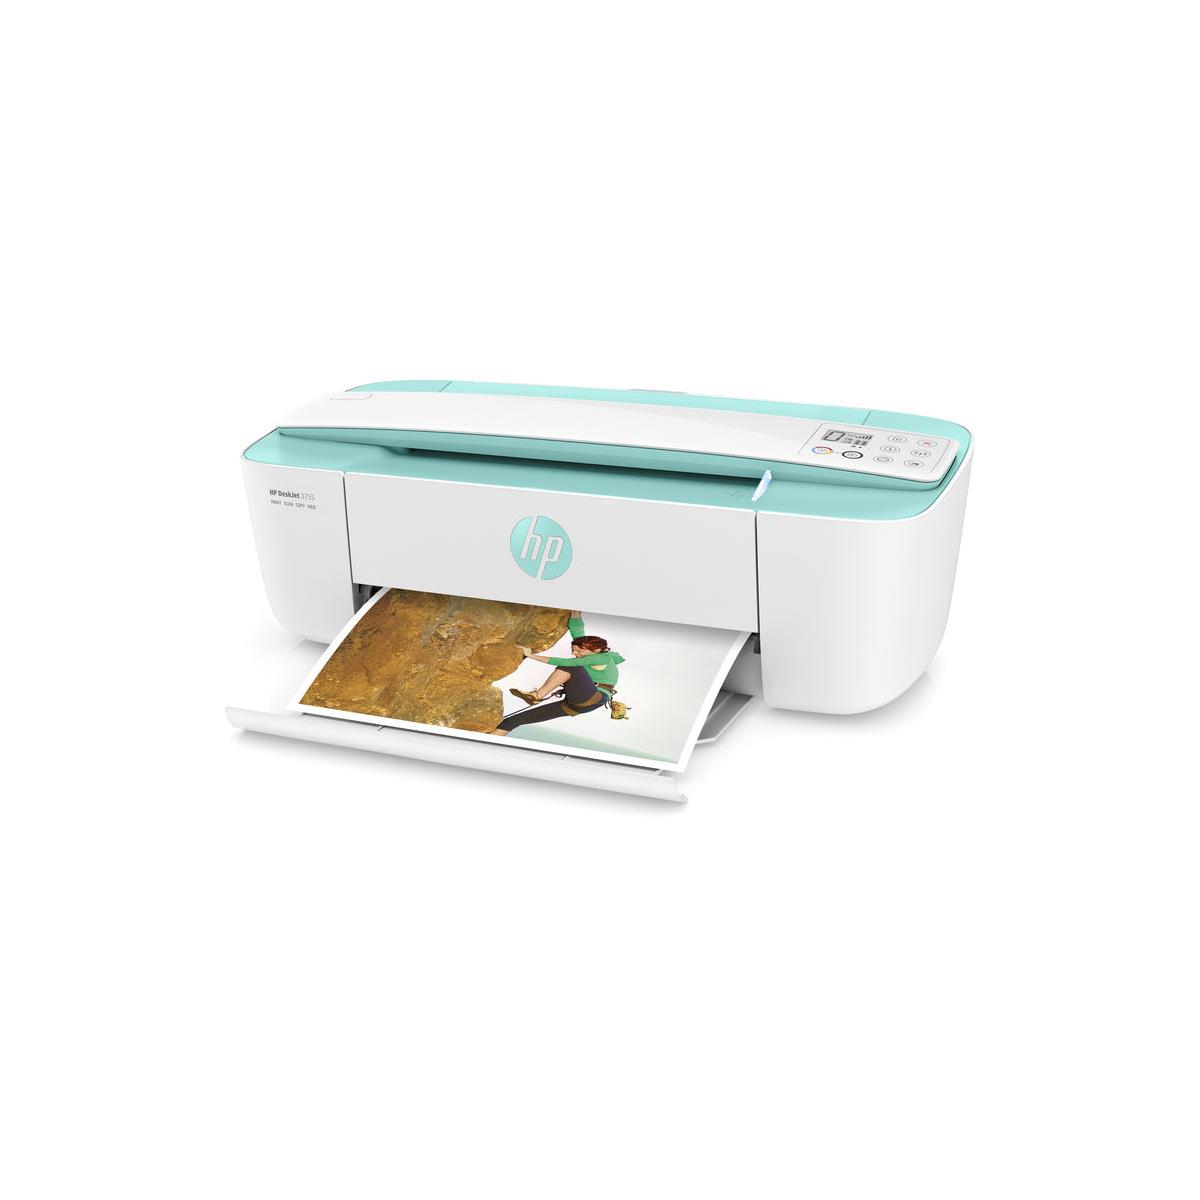 

HP DeskJet 3755 All-In-One Wireless Inkjet Printer, Sea Foam Green